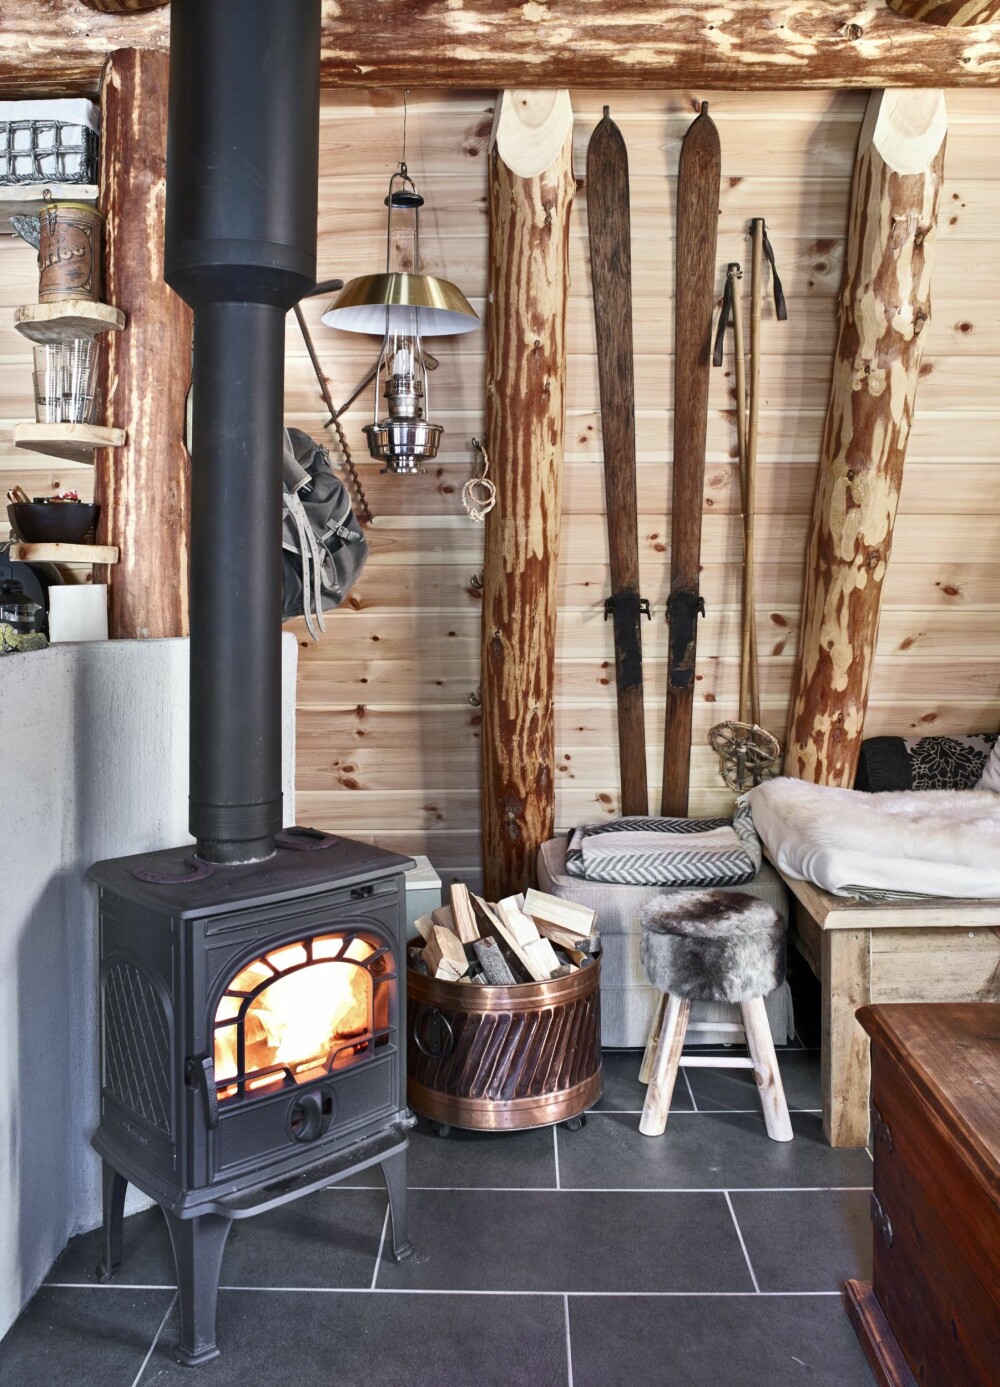 LUNT MED VEDOVN: Det tar ikke lang tid å få varme i hytta, som er godt isolert med jord og torv. Gamle ski og Ludvik-sekk bidrar til den nostalgiske interiørstilen. FOTO: Sveinung Bråthen 